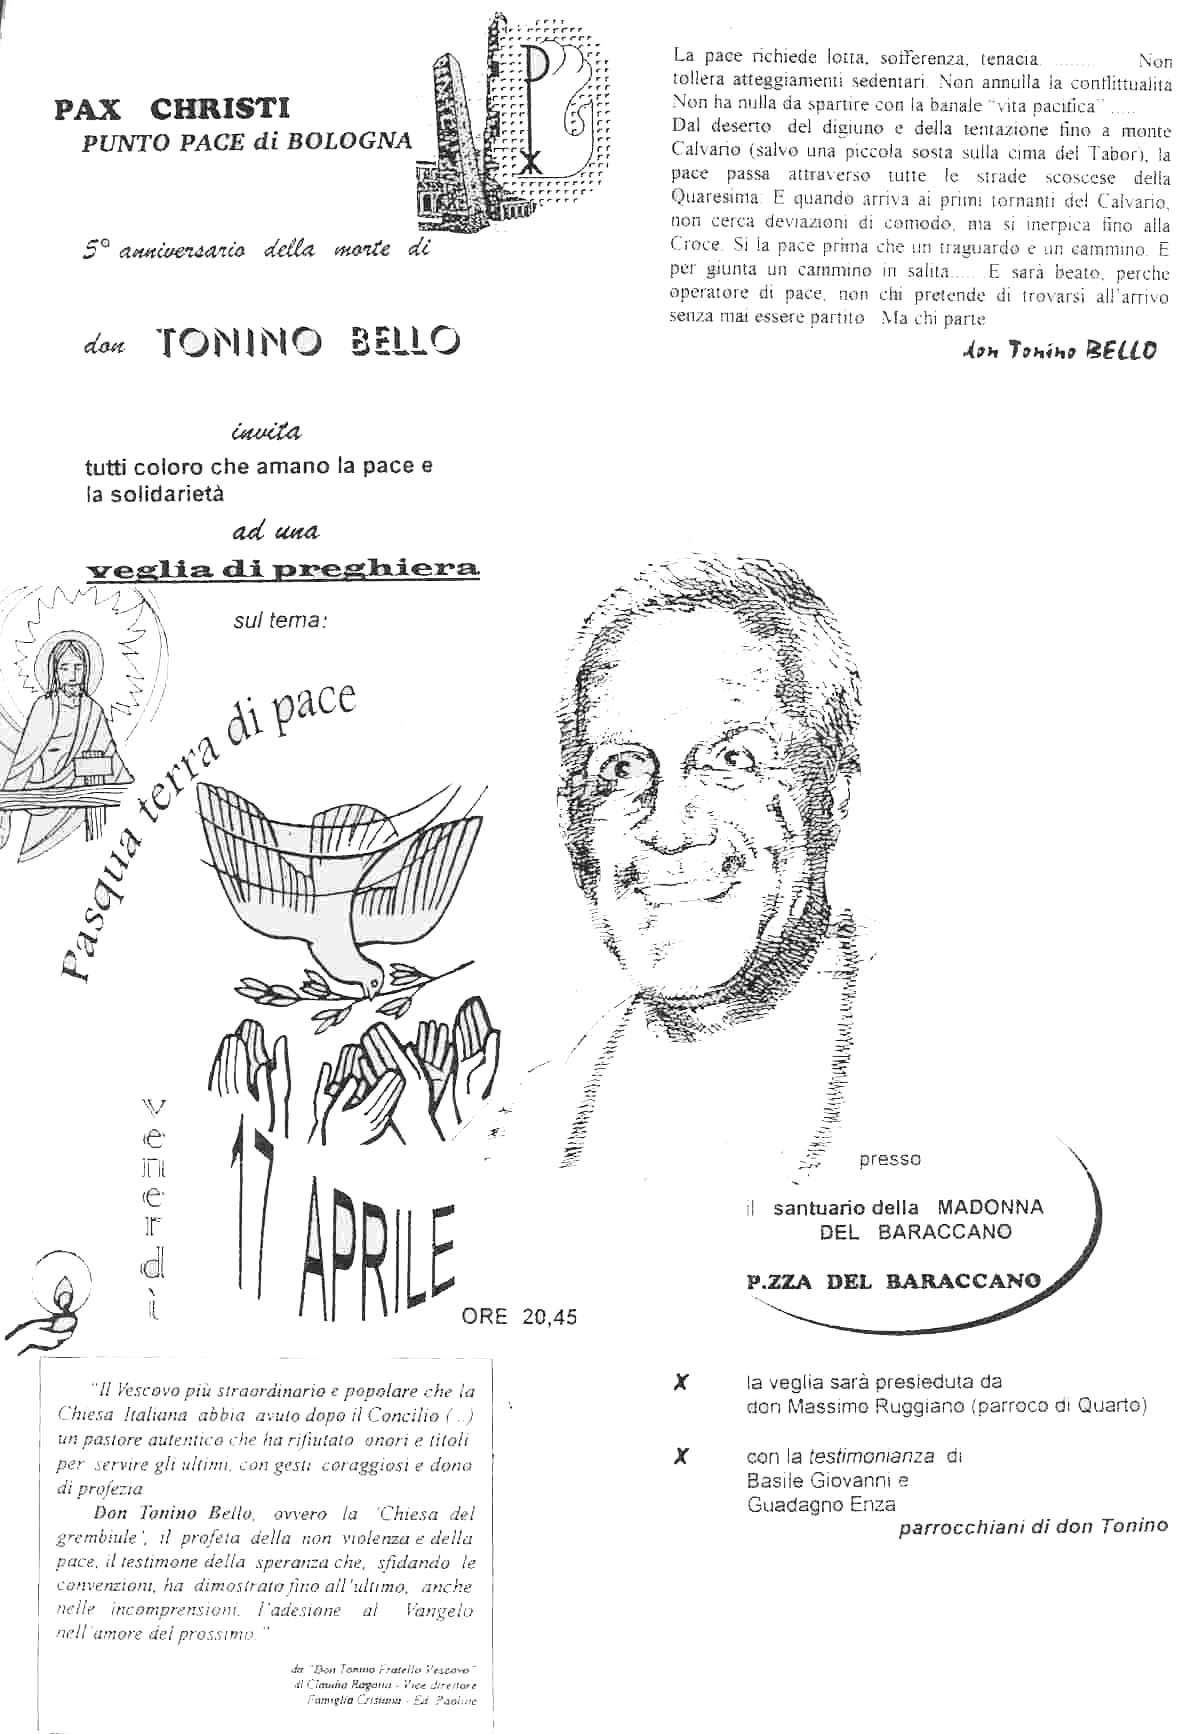 17 aprile 1998: 5° anniversario della morte di don Tonino Bello